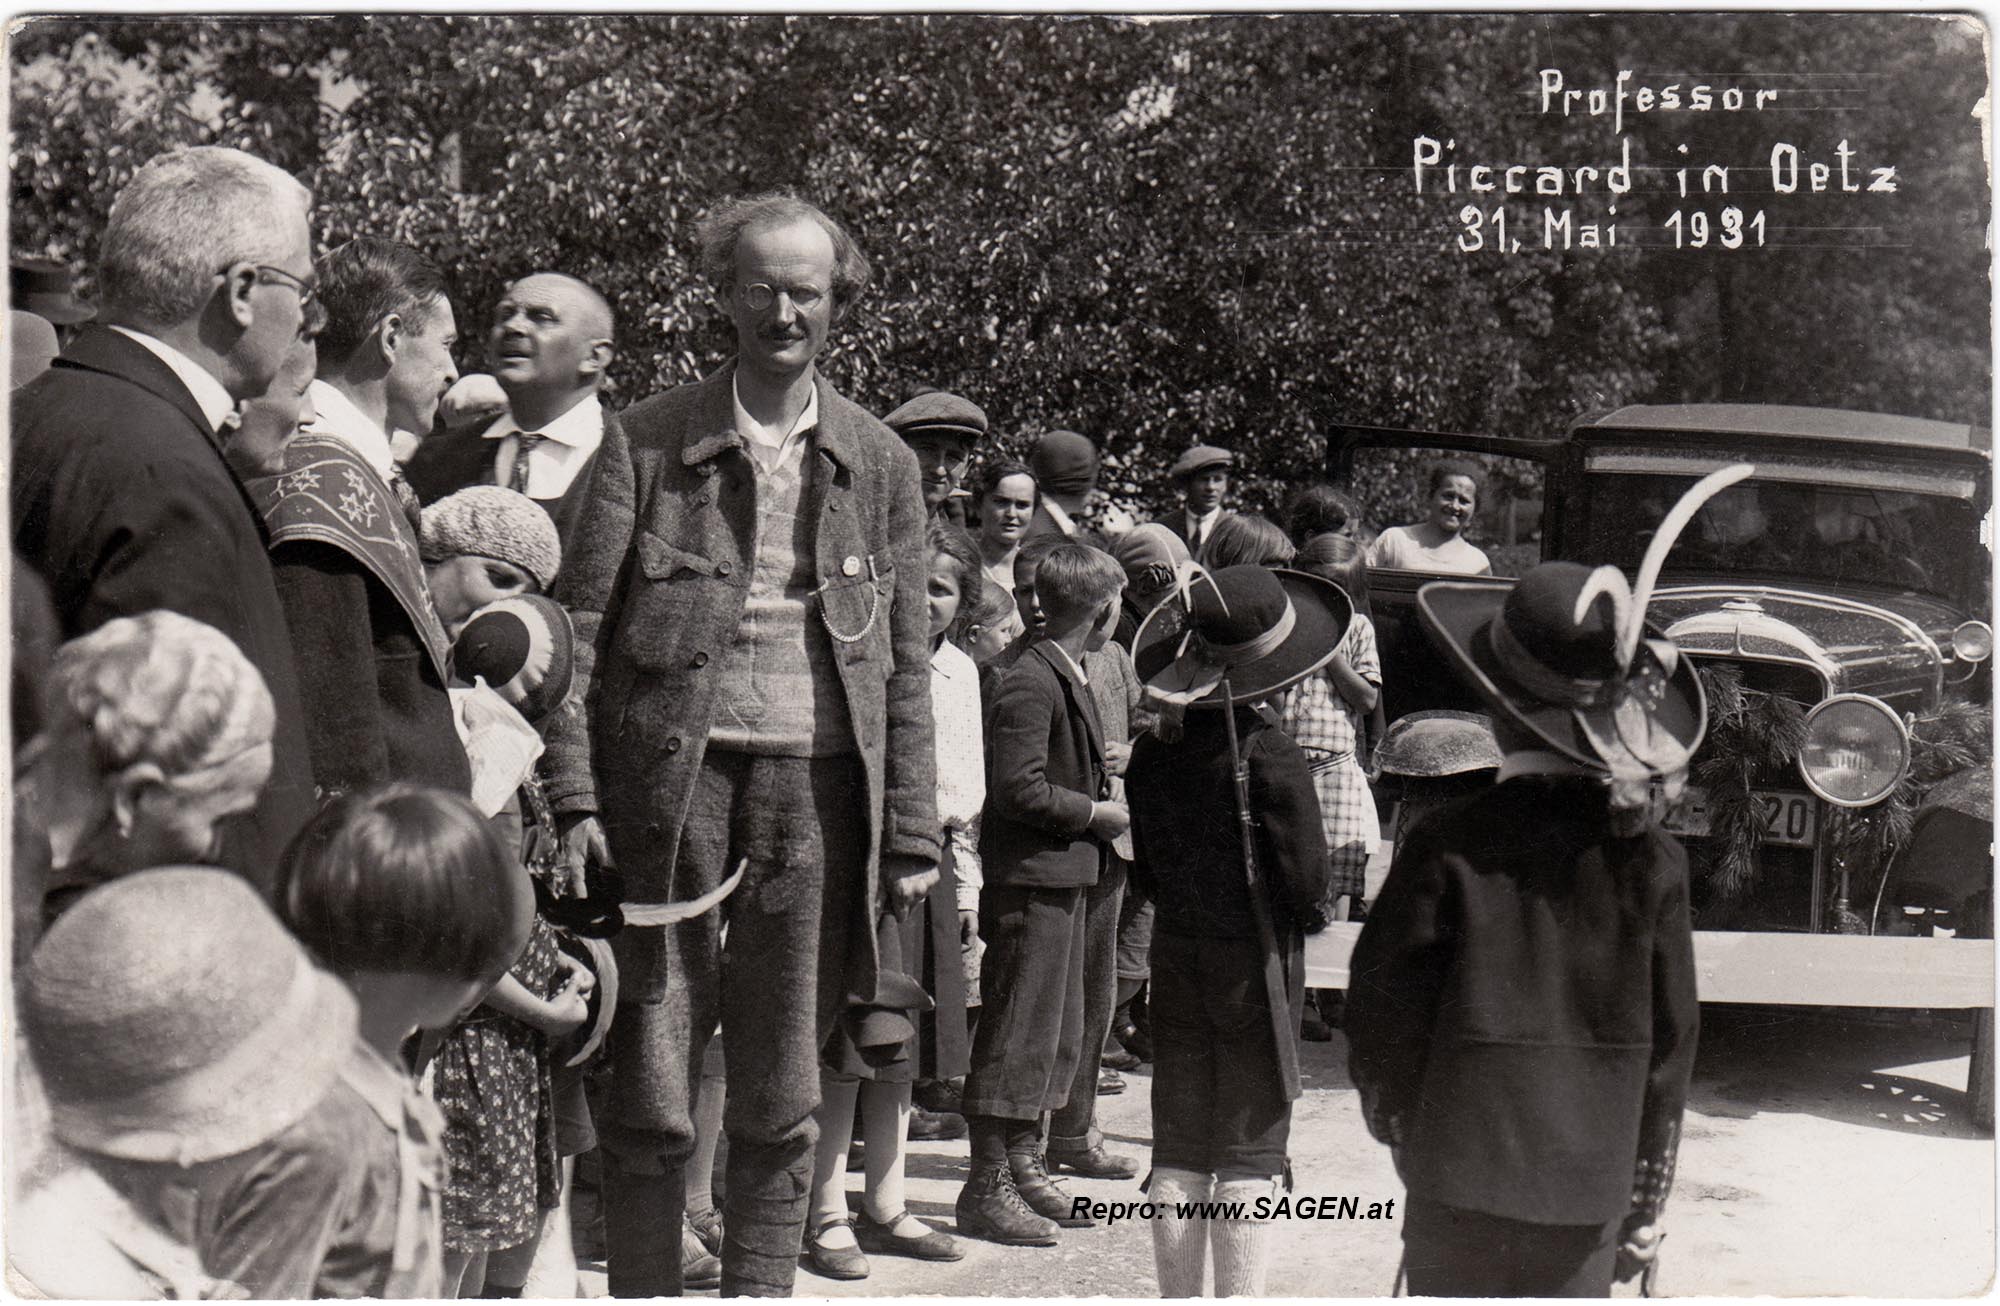 Professor Piccard in Oetz, 31. Mai 1931